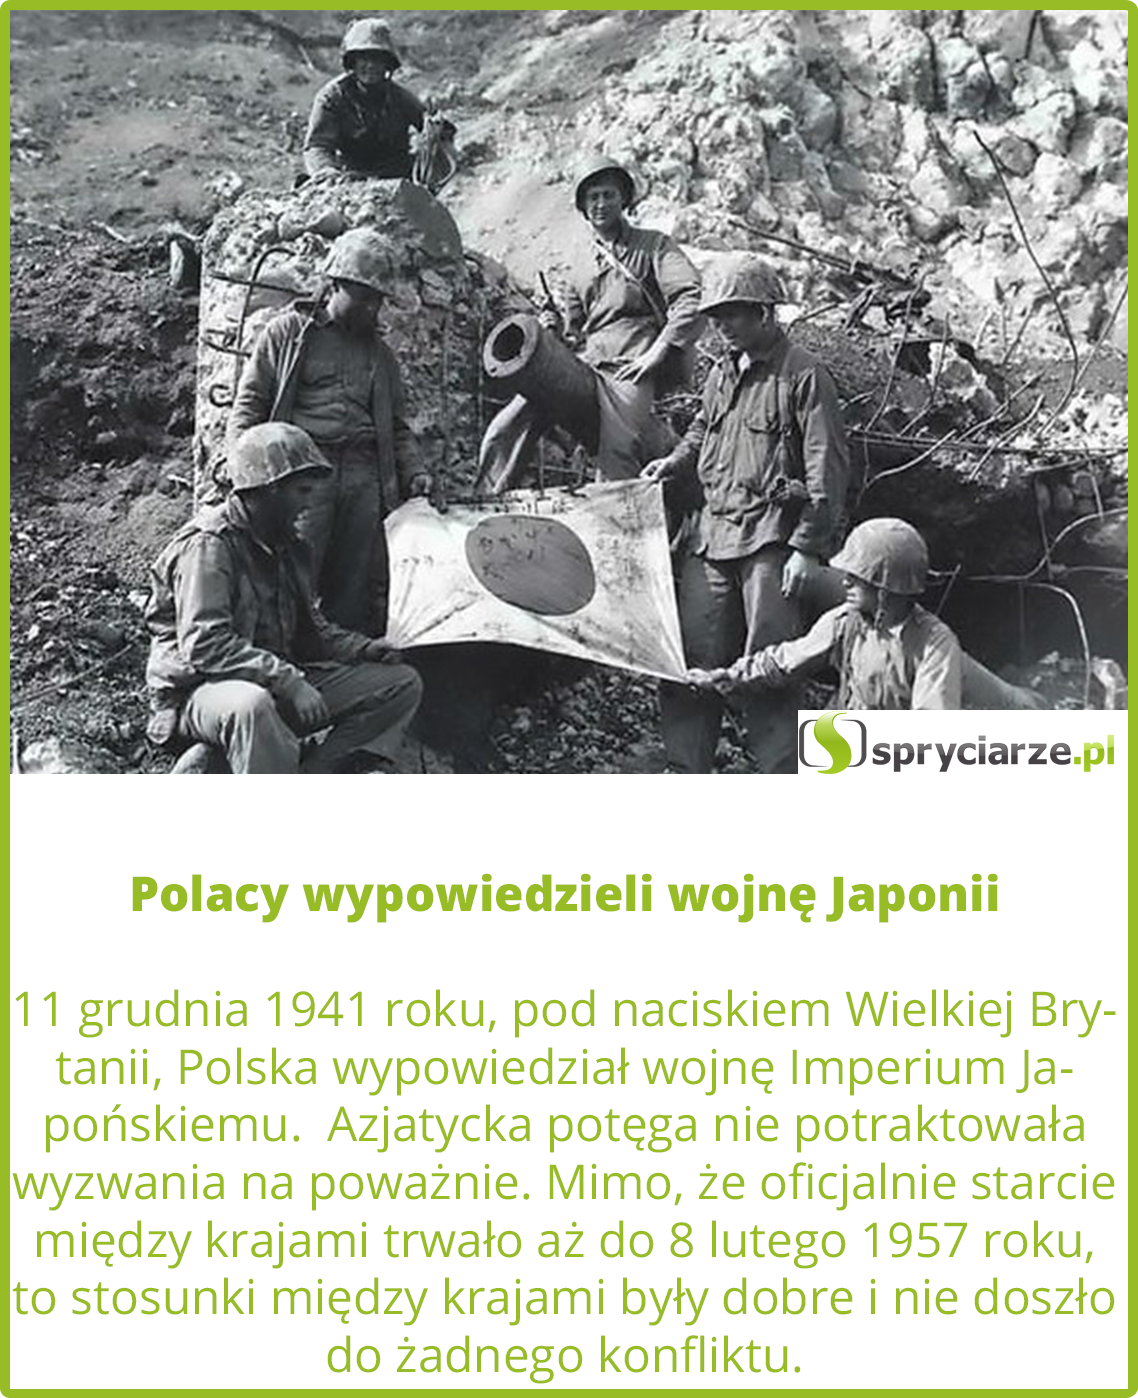 Polacy wypowiedzieli wojnę Japonii